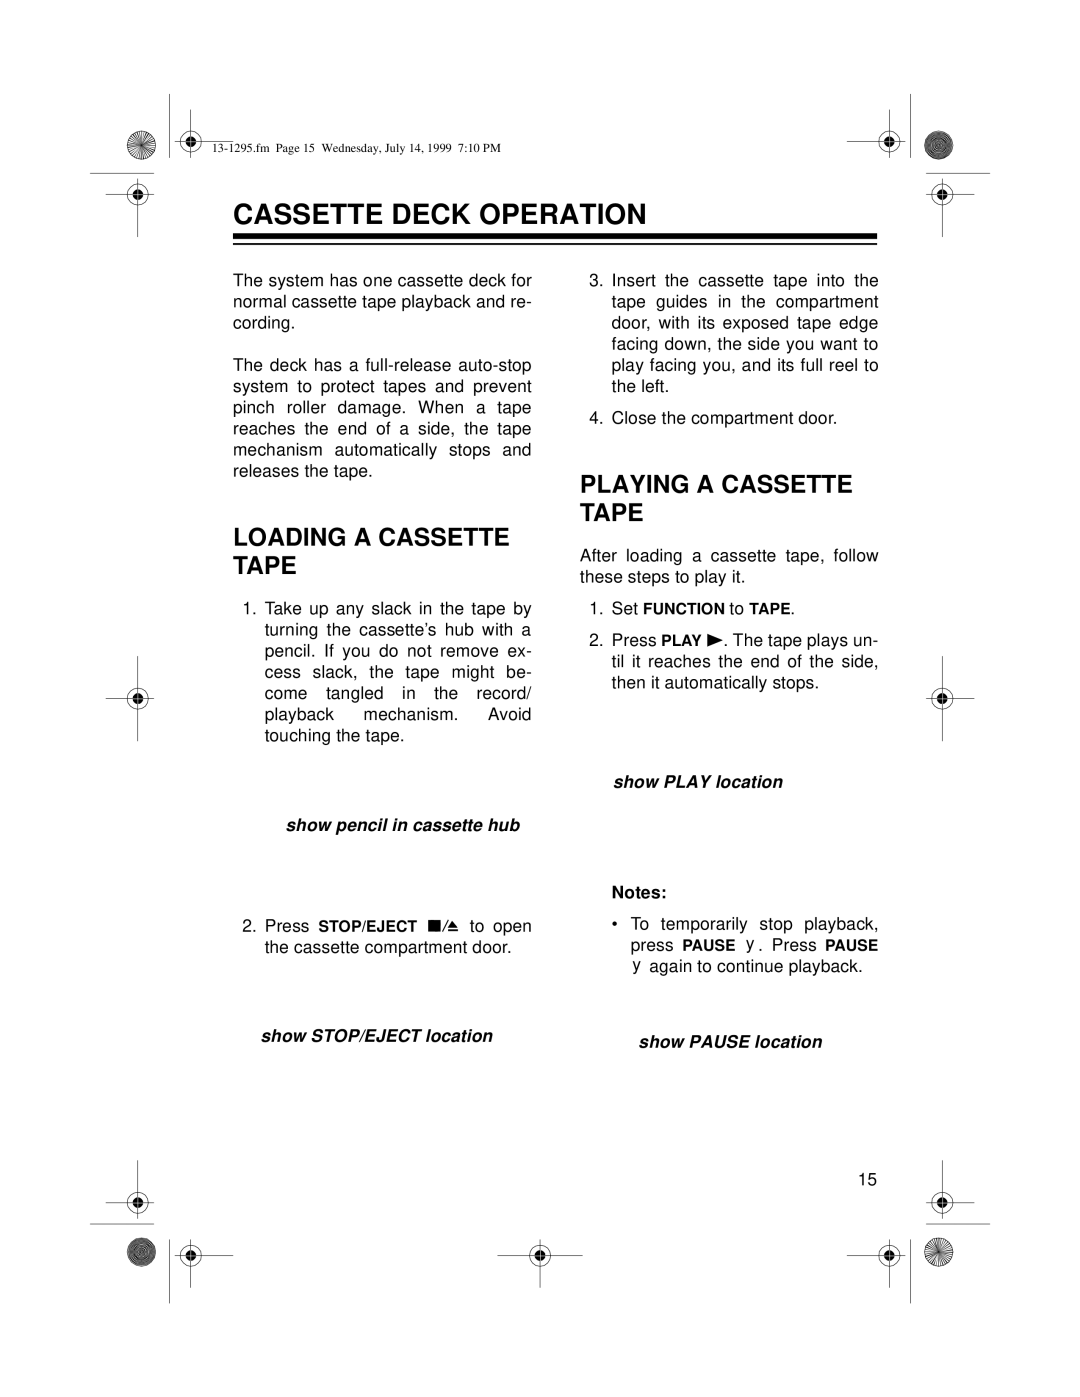 Optimus SYSTEM 747 Cassette Deck Operation, Loading A Cassette Tape, Playing A Cassette Tape, show pencil in cassette hub 